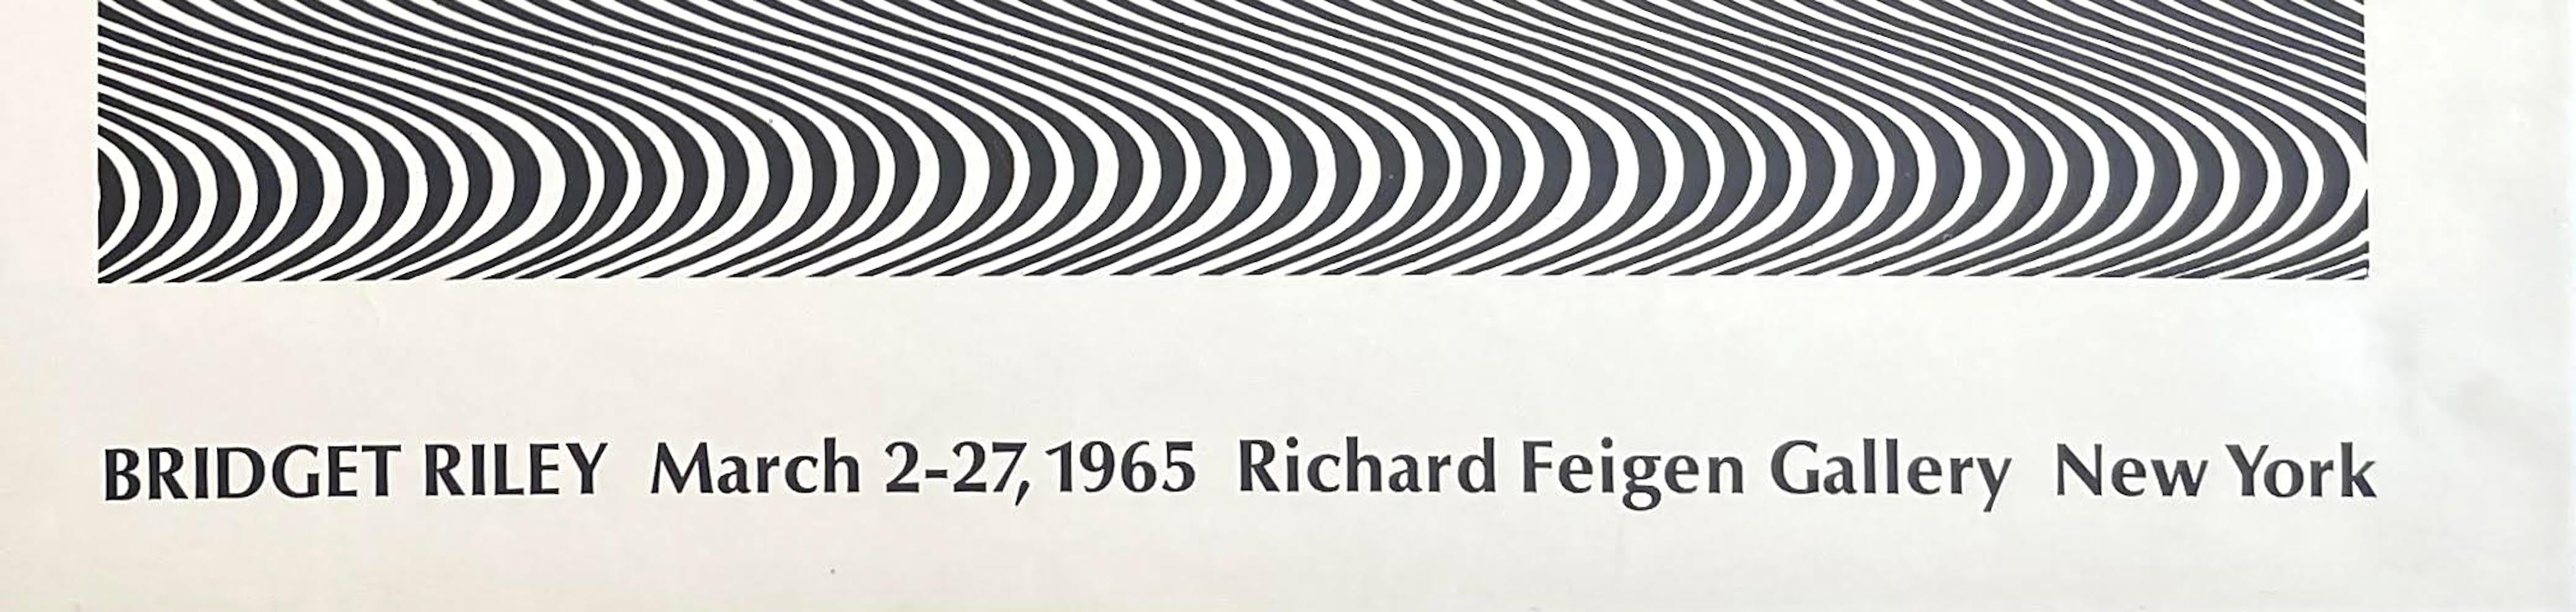 Richard Feigen Gallery 1965 Op Art poster - Print by Bridget Riley